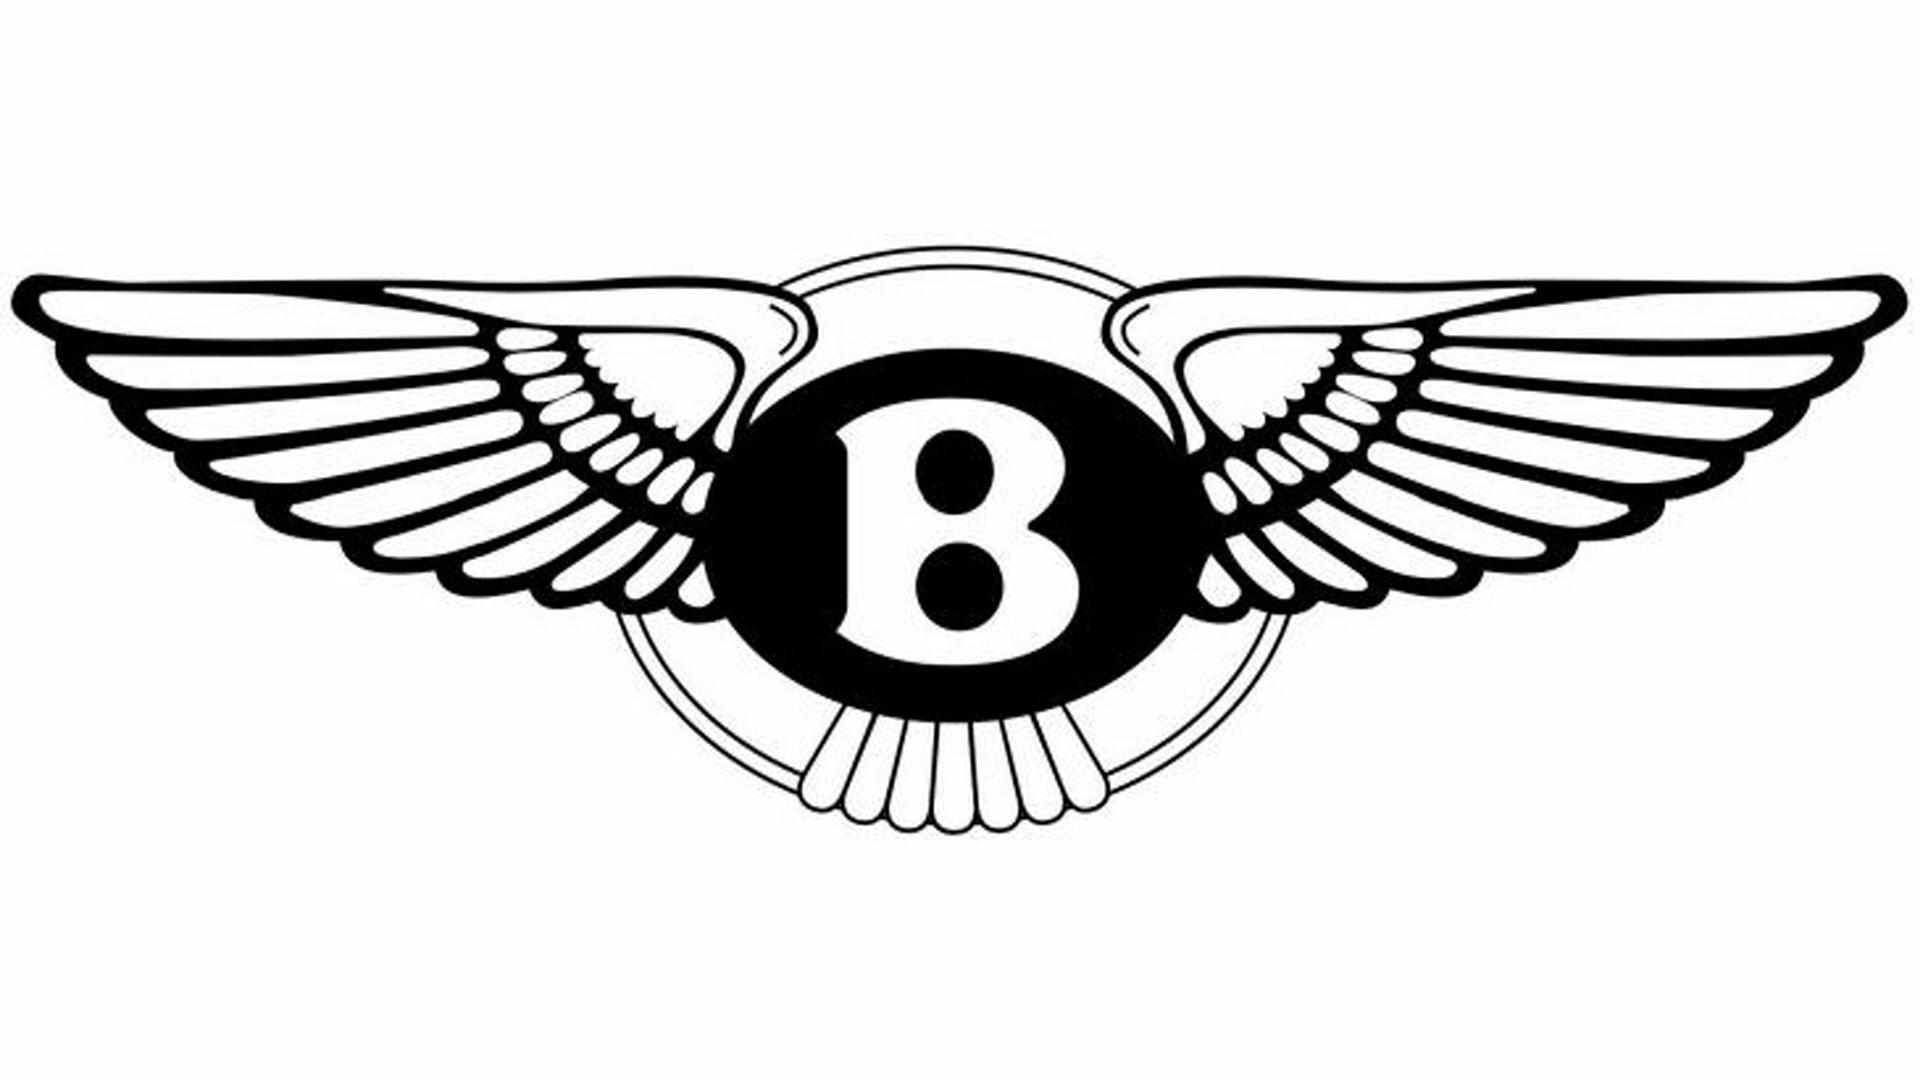 Bentley, The Free Social Encyclopedia